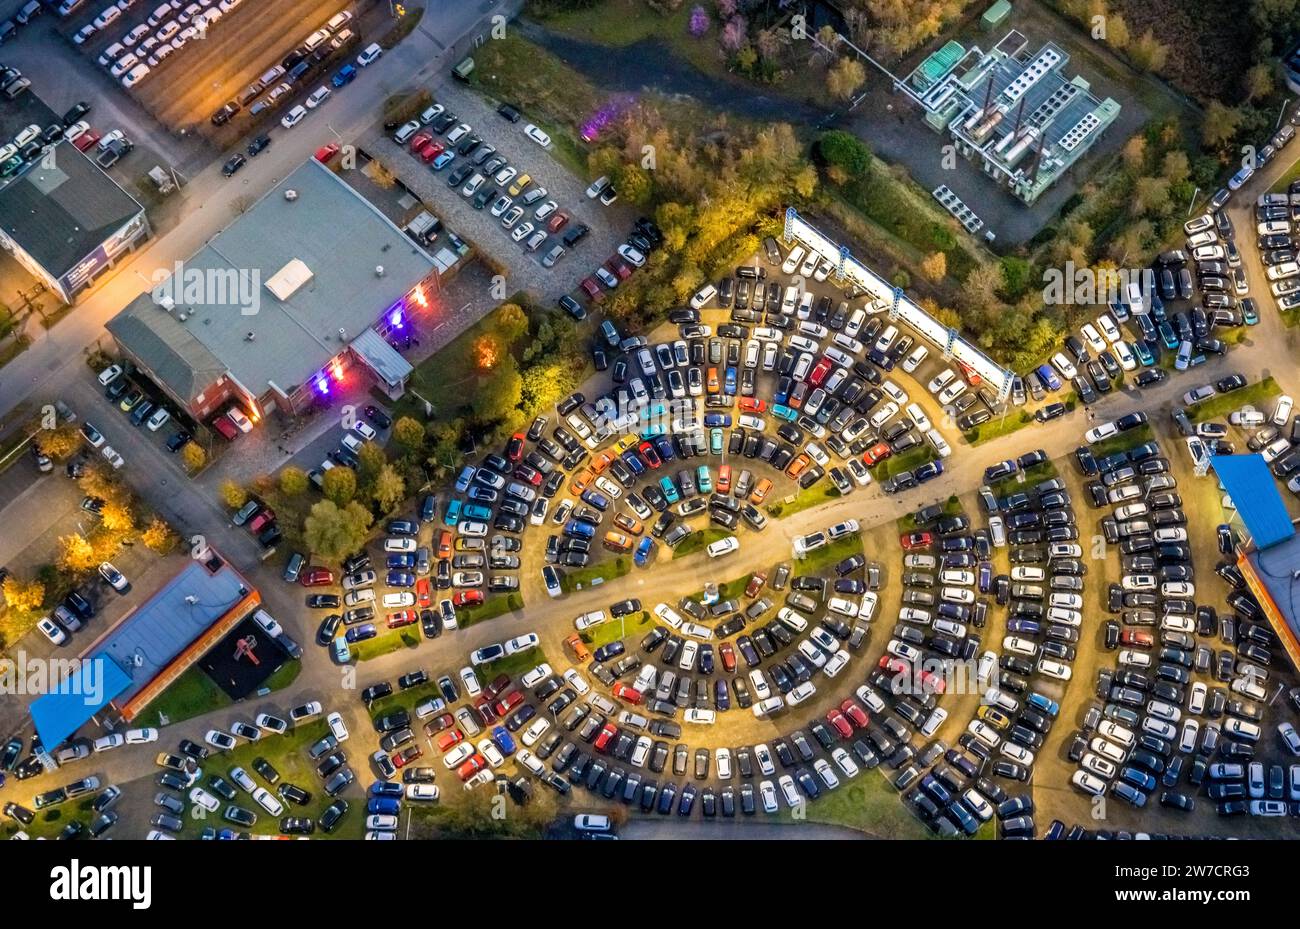 Vue aérienne, prise de vue de nuit, concessionnaire Potthoff illuminé, parking circulaire pour voitures, Bockum-Hövel, Hamm, région de la Ruhr, Rhénanie du Nord-Westphalie, GE Banque D'Images